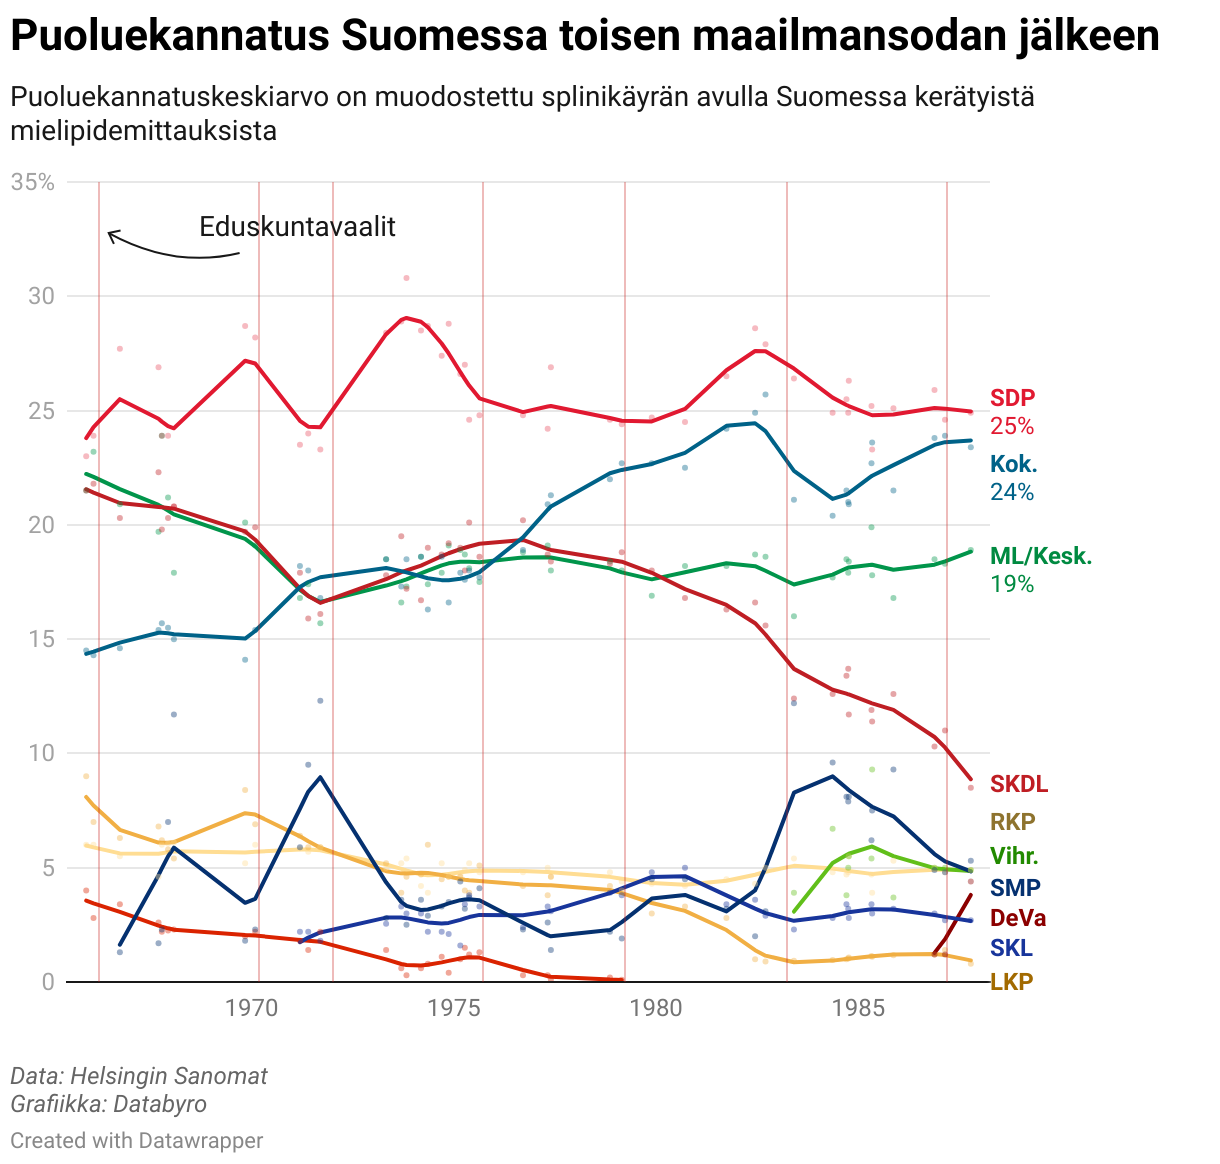 Puoluekannatus Suomessa – aikasarja